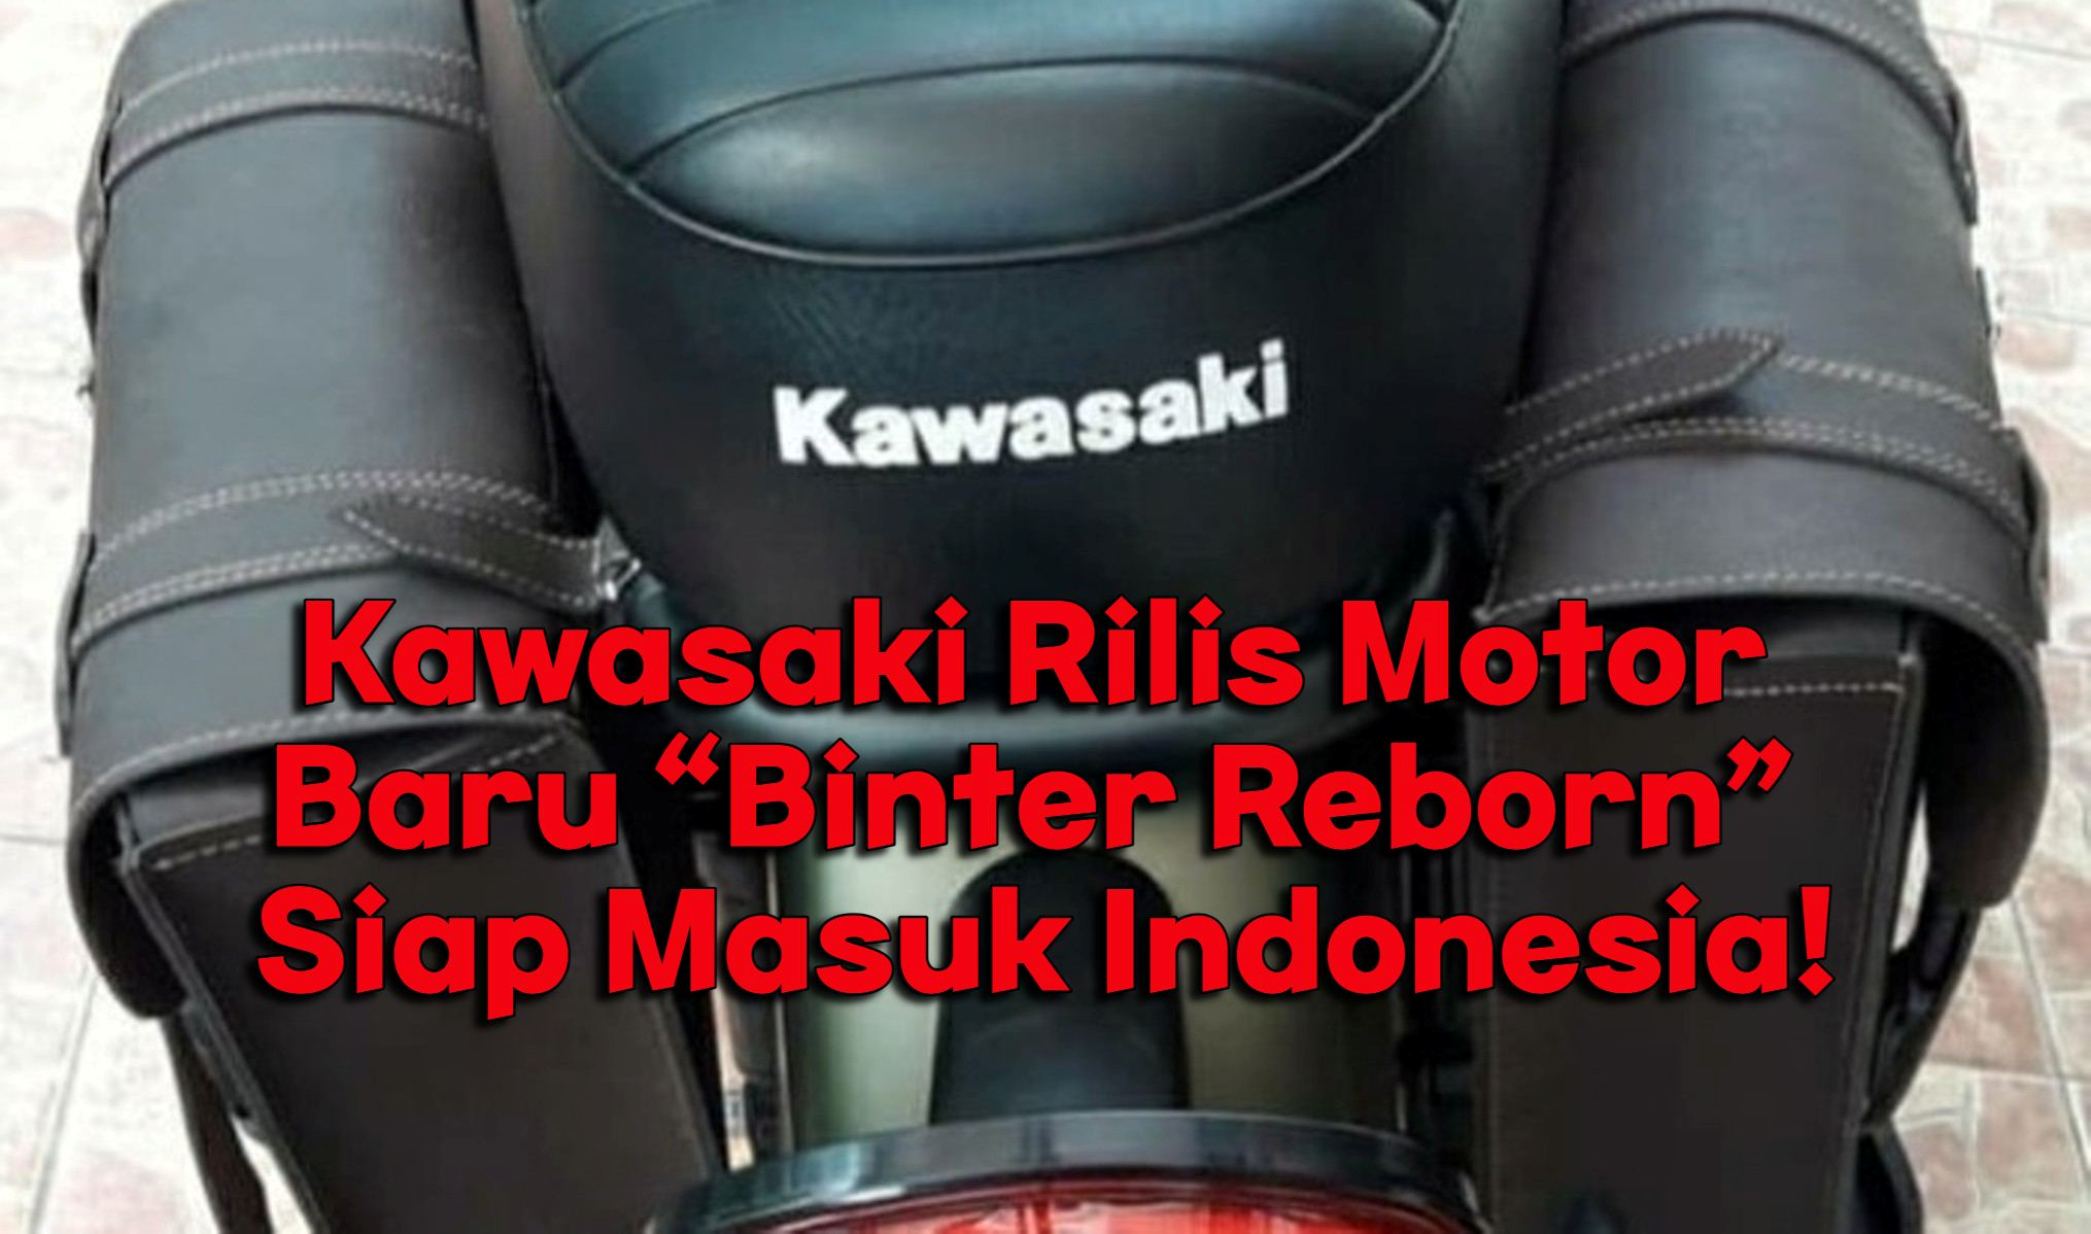 Gak Mau Kalah, Kawasaki Rilis Motor Baru “Binter Reborn” Siap Masuk Indonesia!